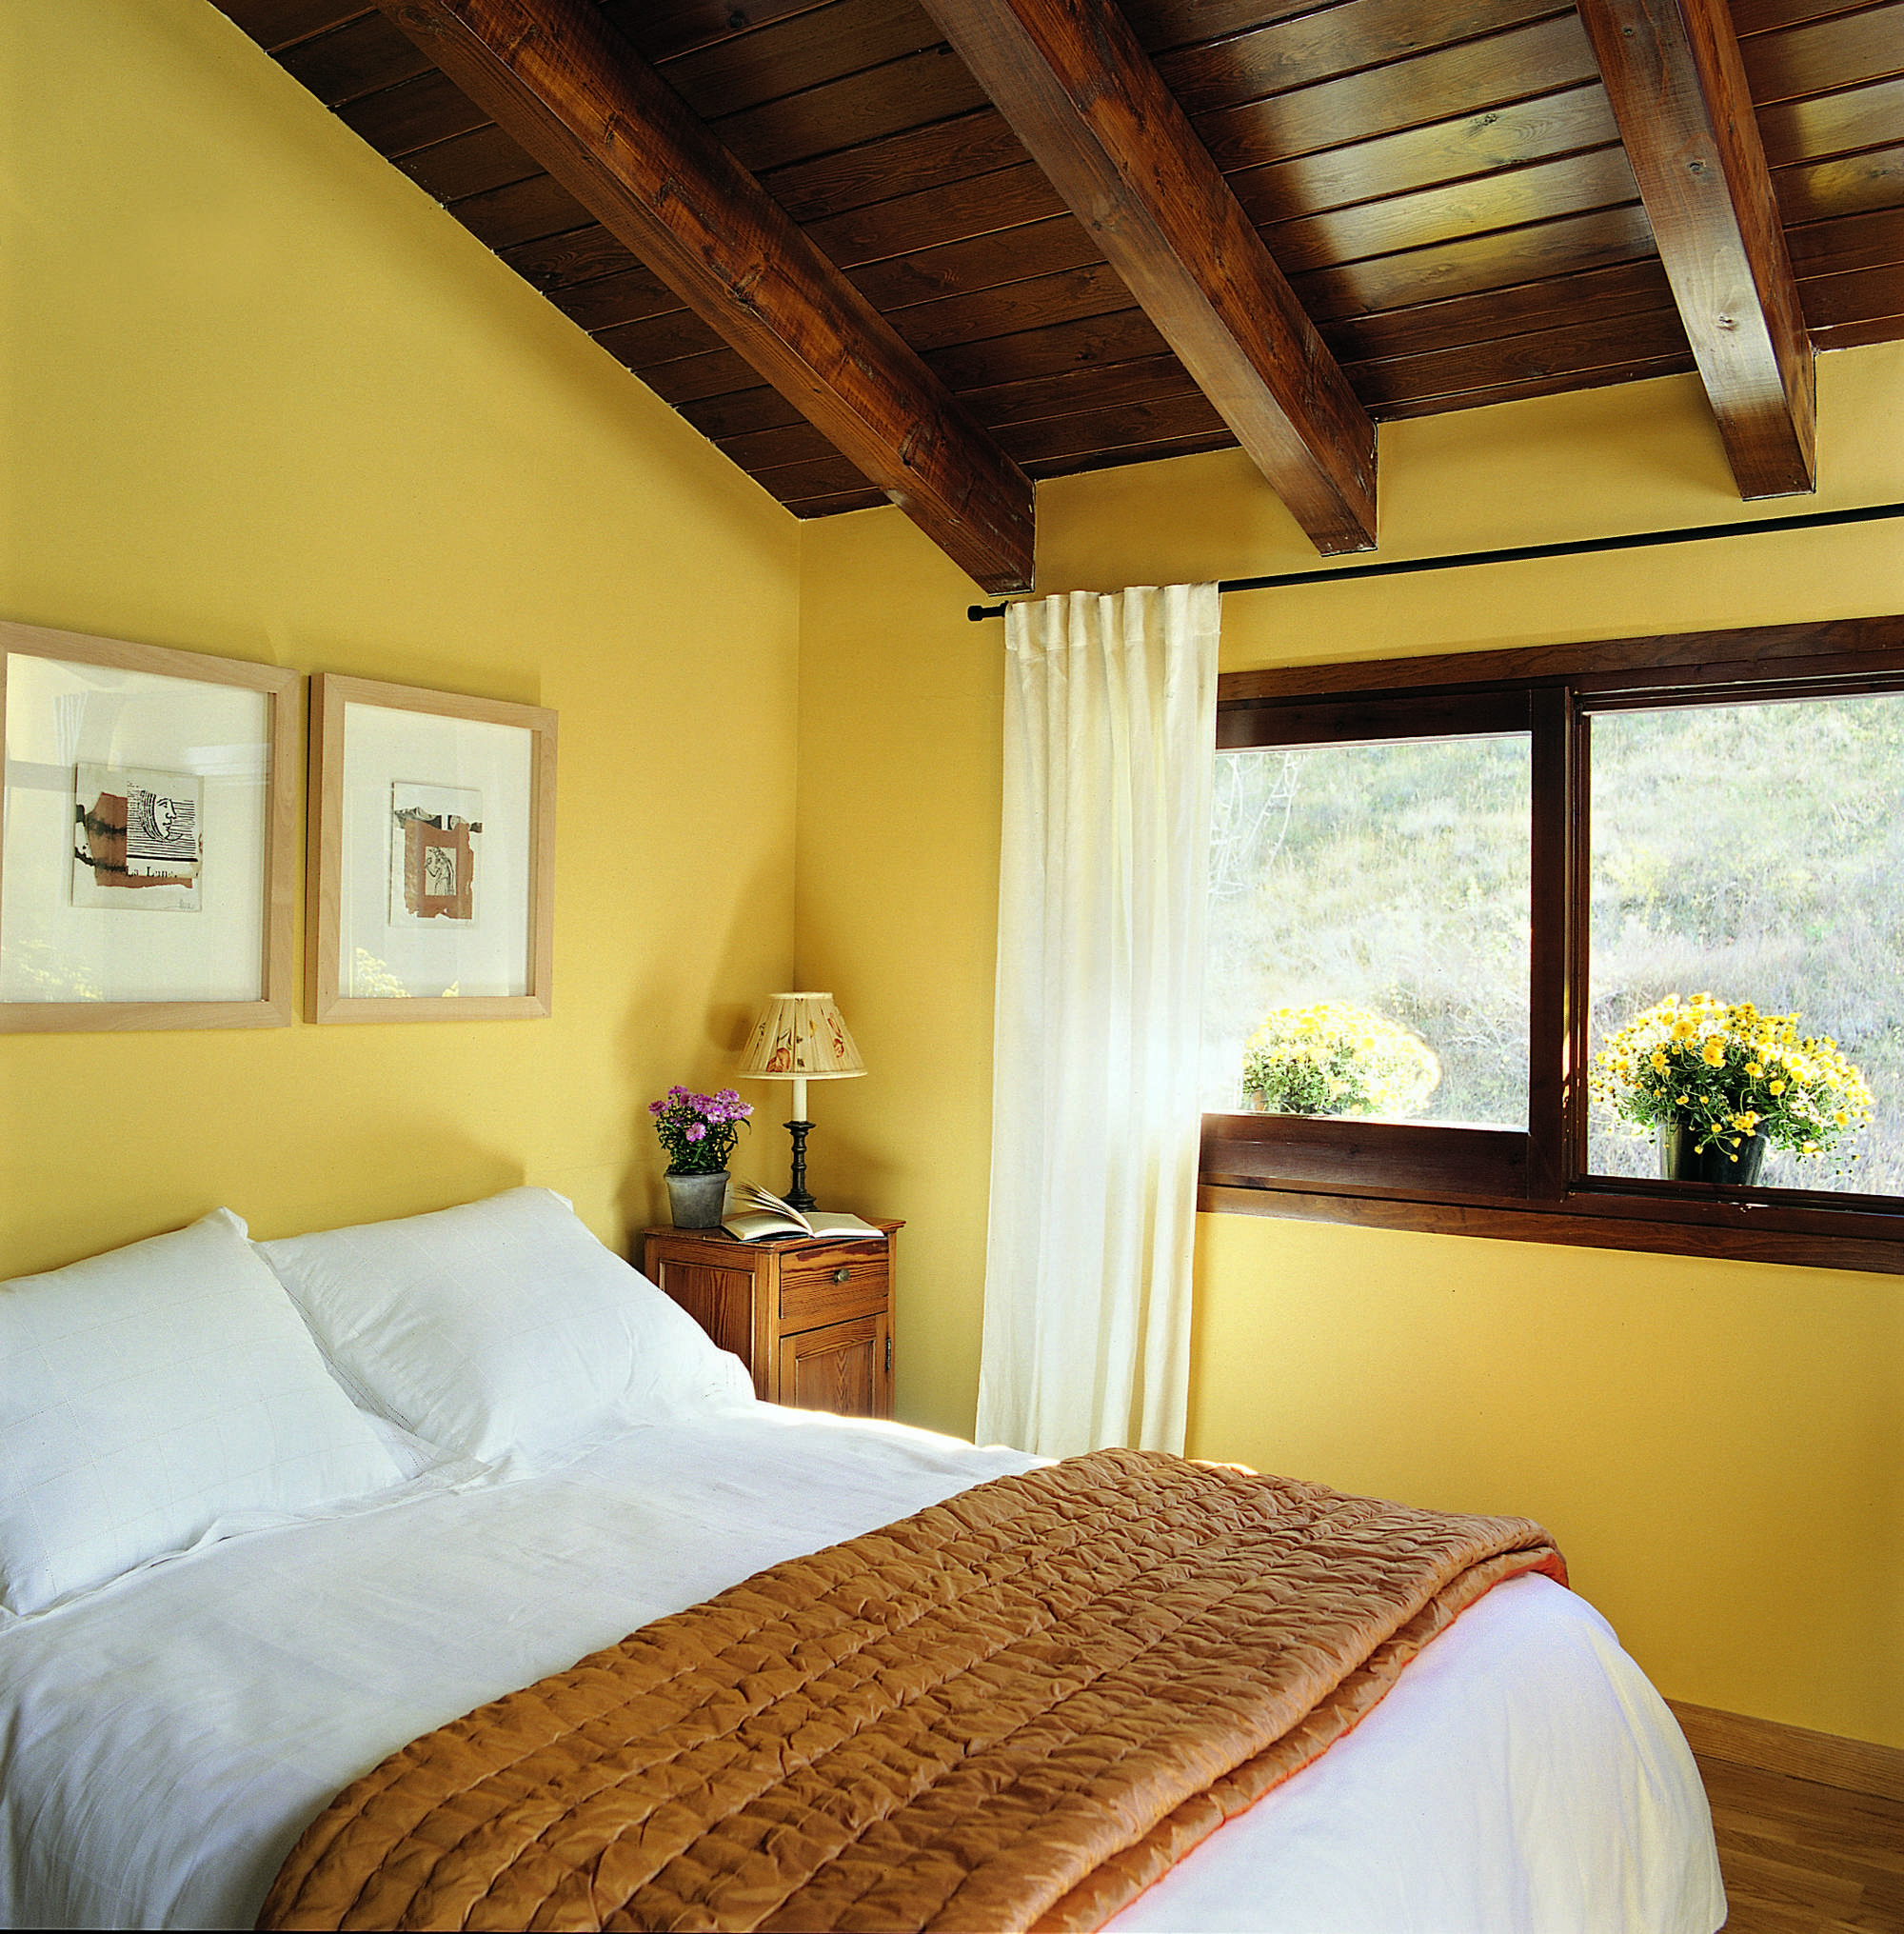 Dormitorio con paredes pintadas de amarillo, vigas de madera y cuadros